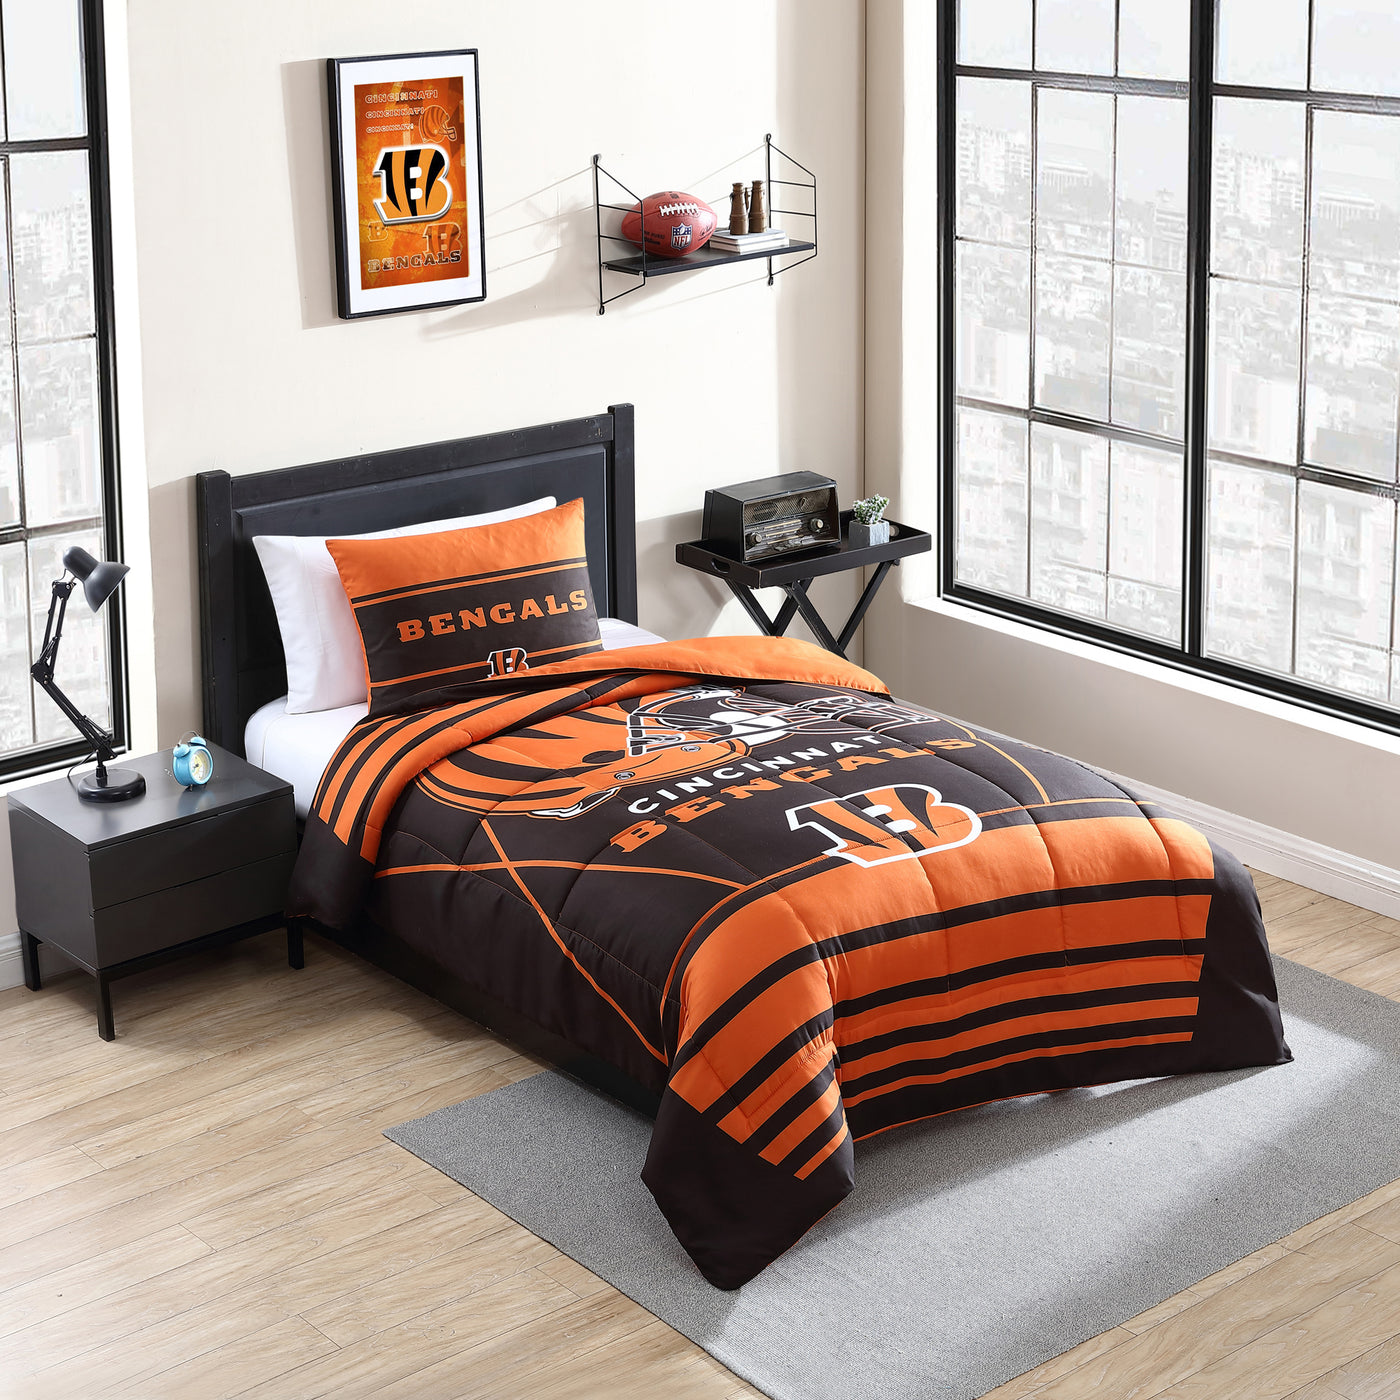 Cincinnati Bengals Crosser Comforter Set Twin